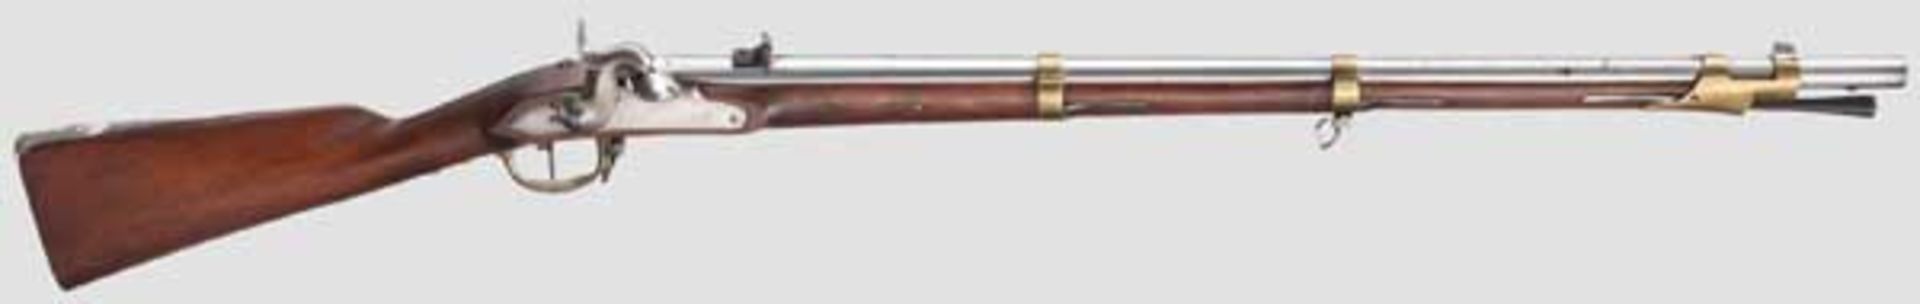 Gezogenes Pioniergewehr a/M, System Minié Gezogener Lauf im Kaliber 18,6 mm, mit blanker Seele, über